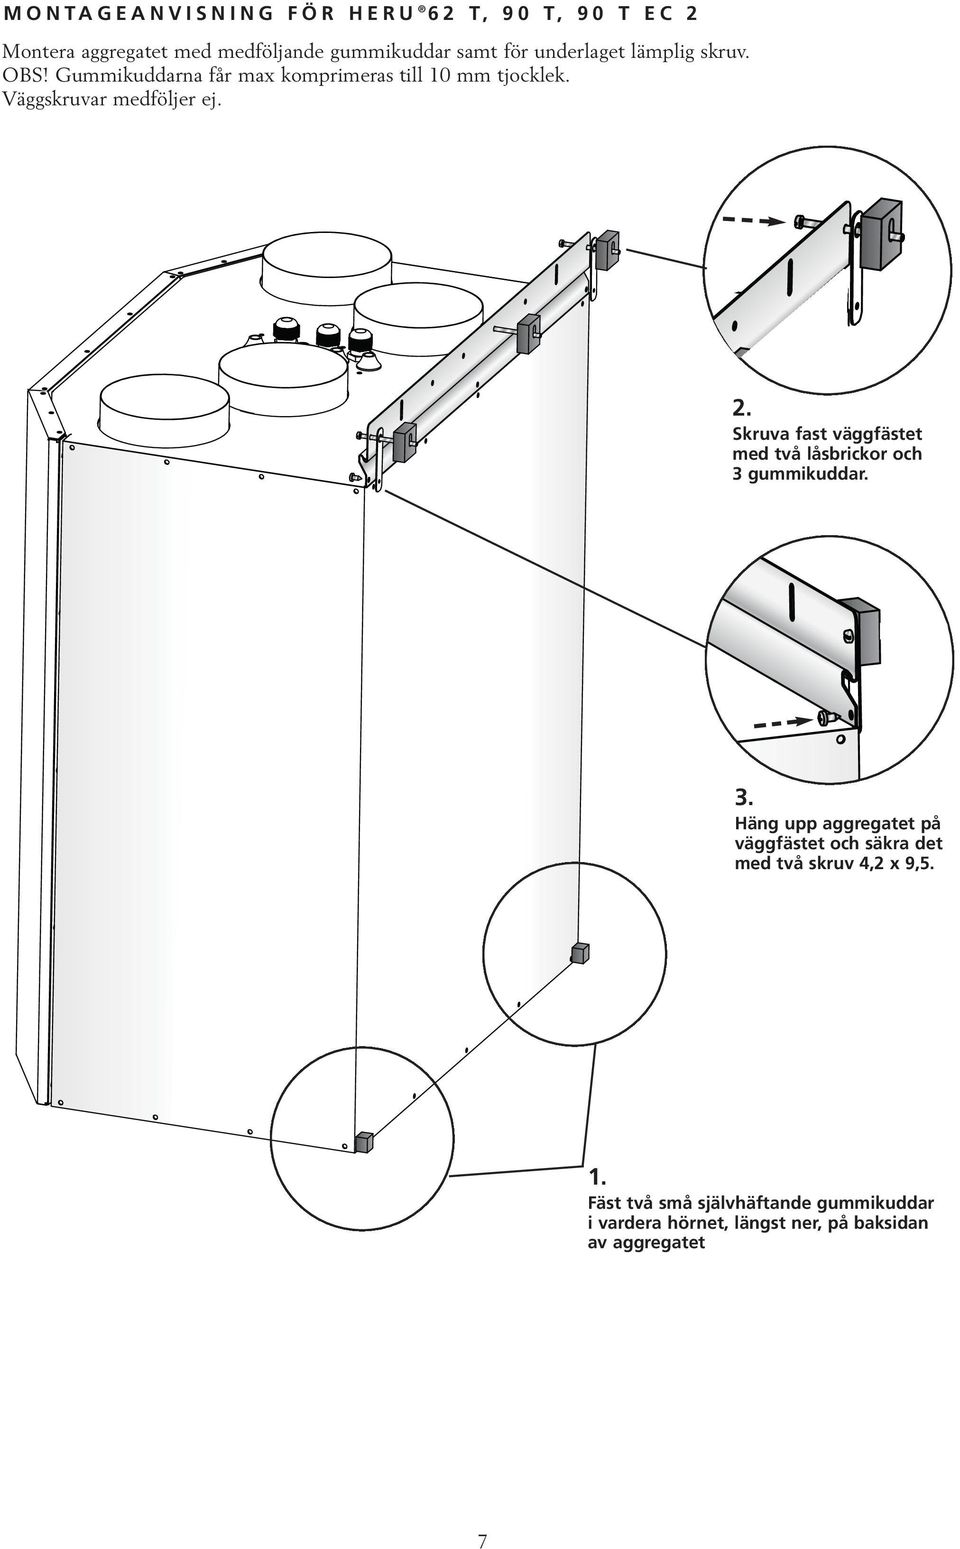 Skruva fast väggfästet med två låsbrickor och 3 